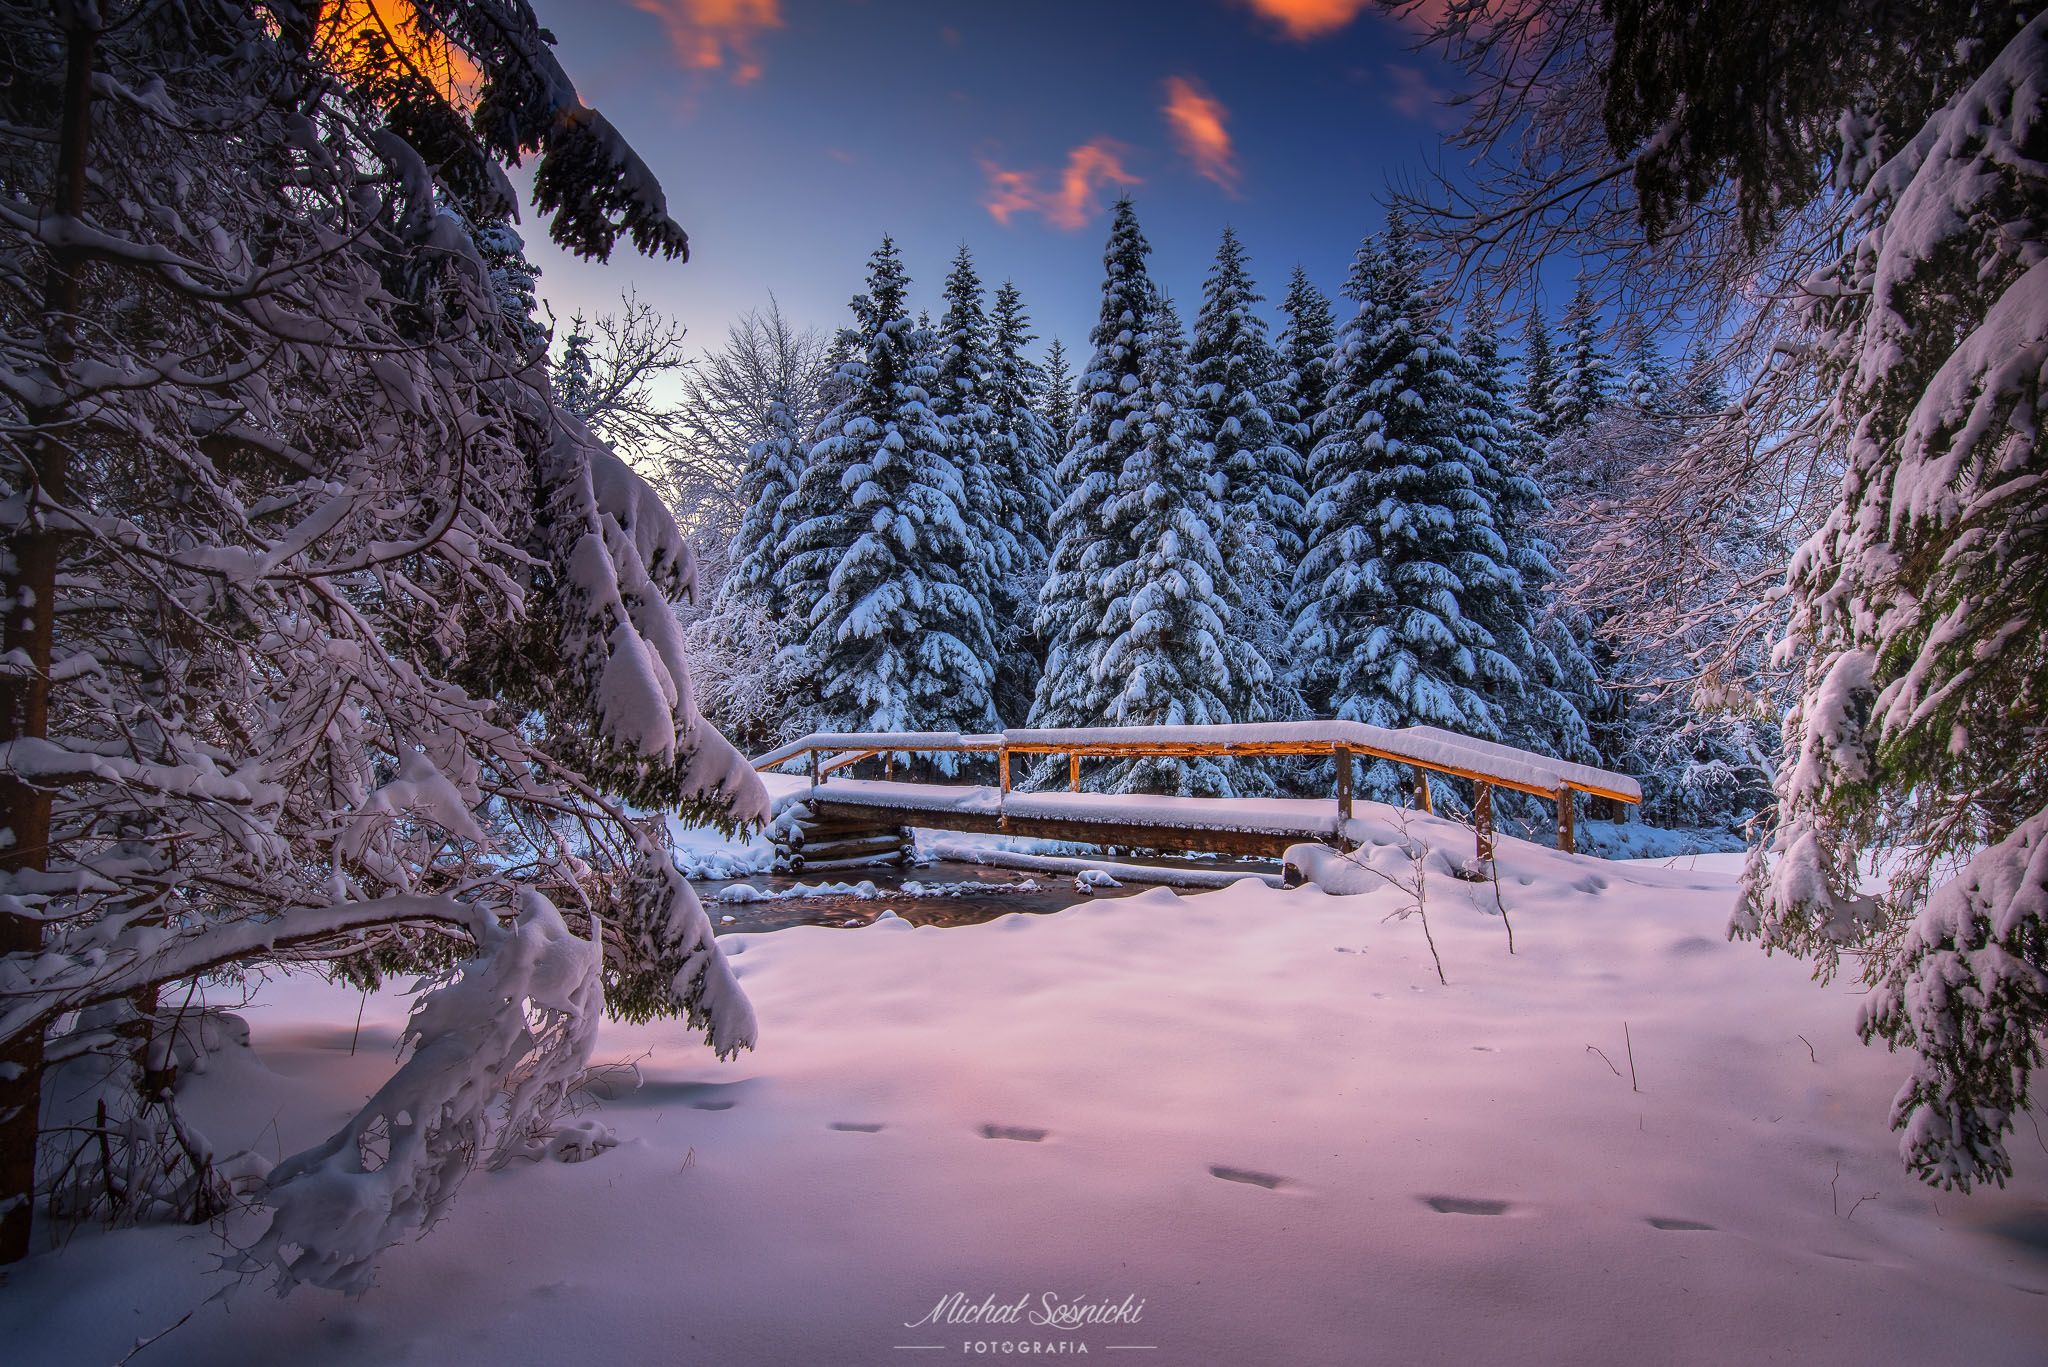 winter scenery zawoja poland pentax snow tree river landscape, Michał Sośnicki